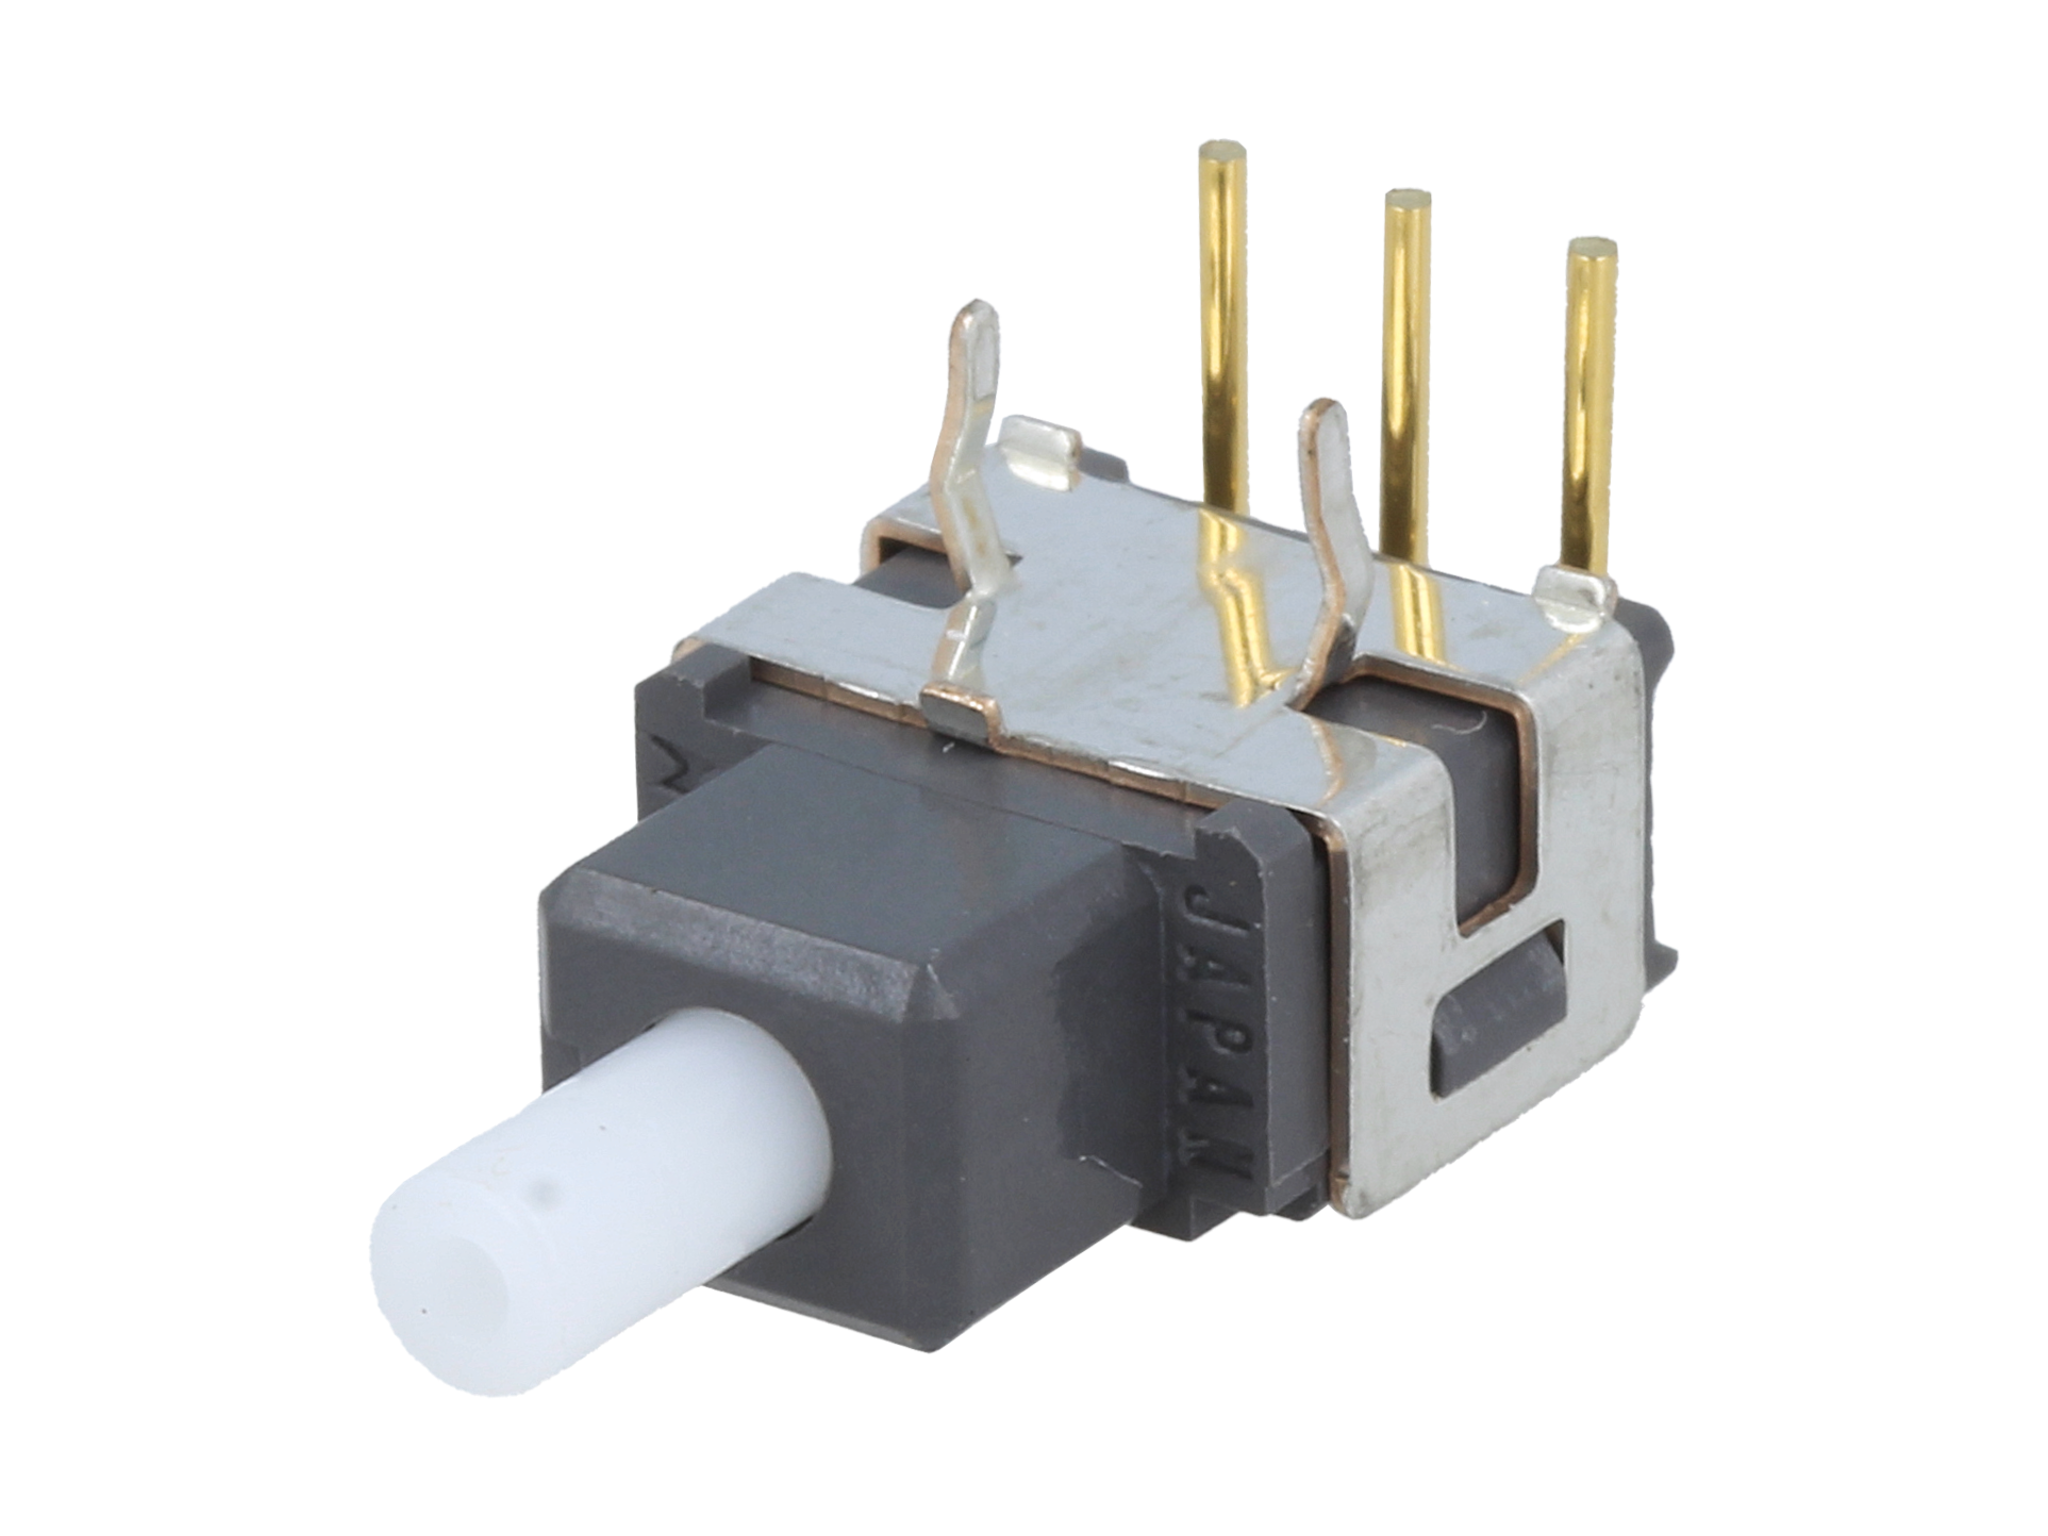 Schalter von NKK Switches – Qualität und Funktionalität